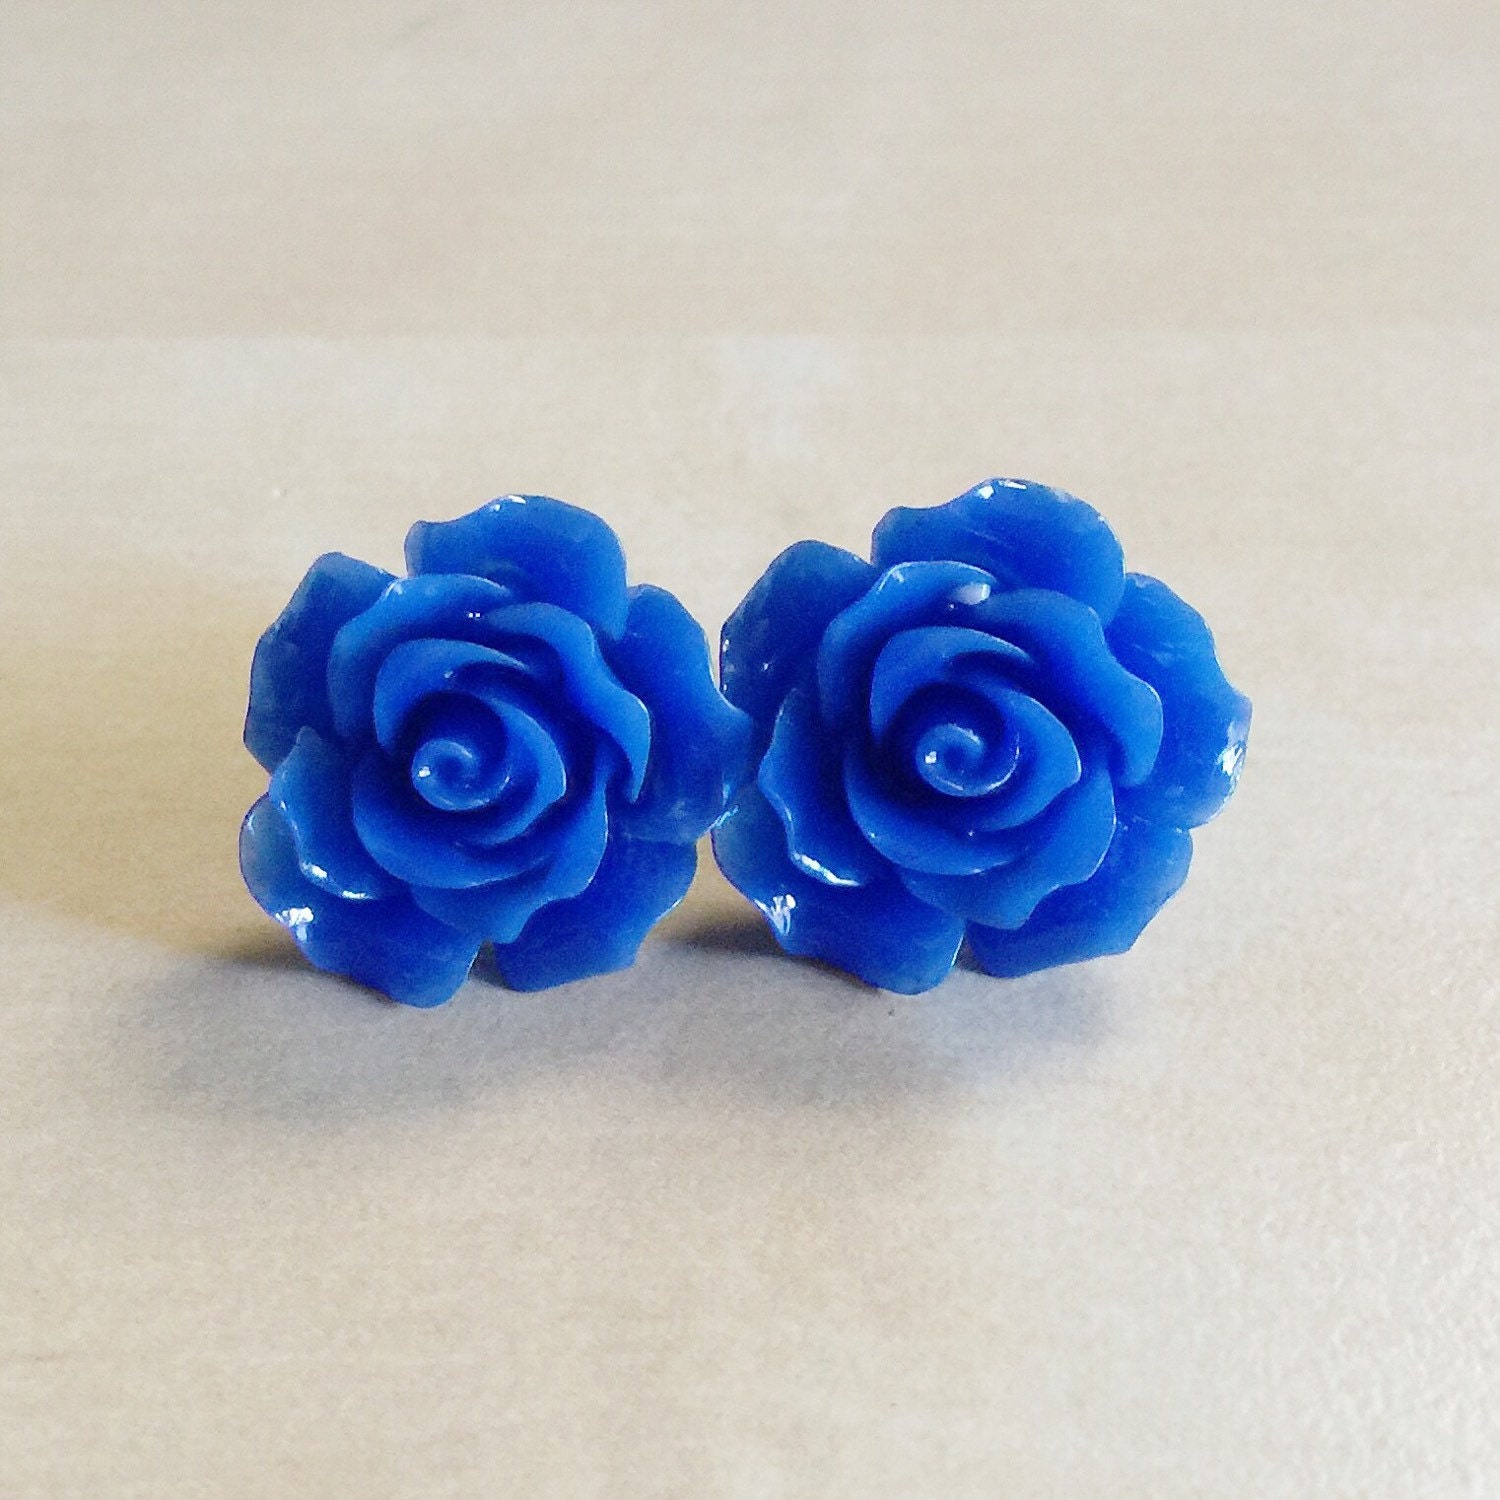 Cobalt Blue Rose Earrings 20mm Resin Flower by BlueButtonBoho